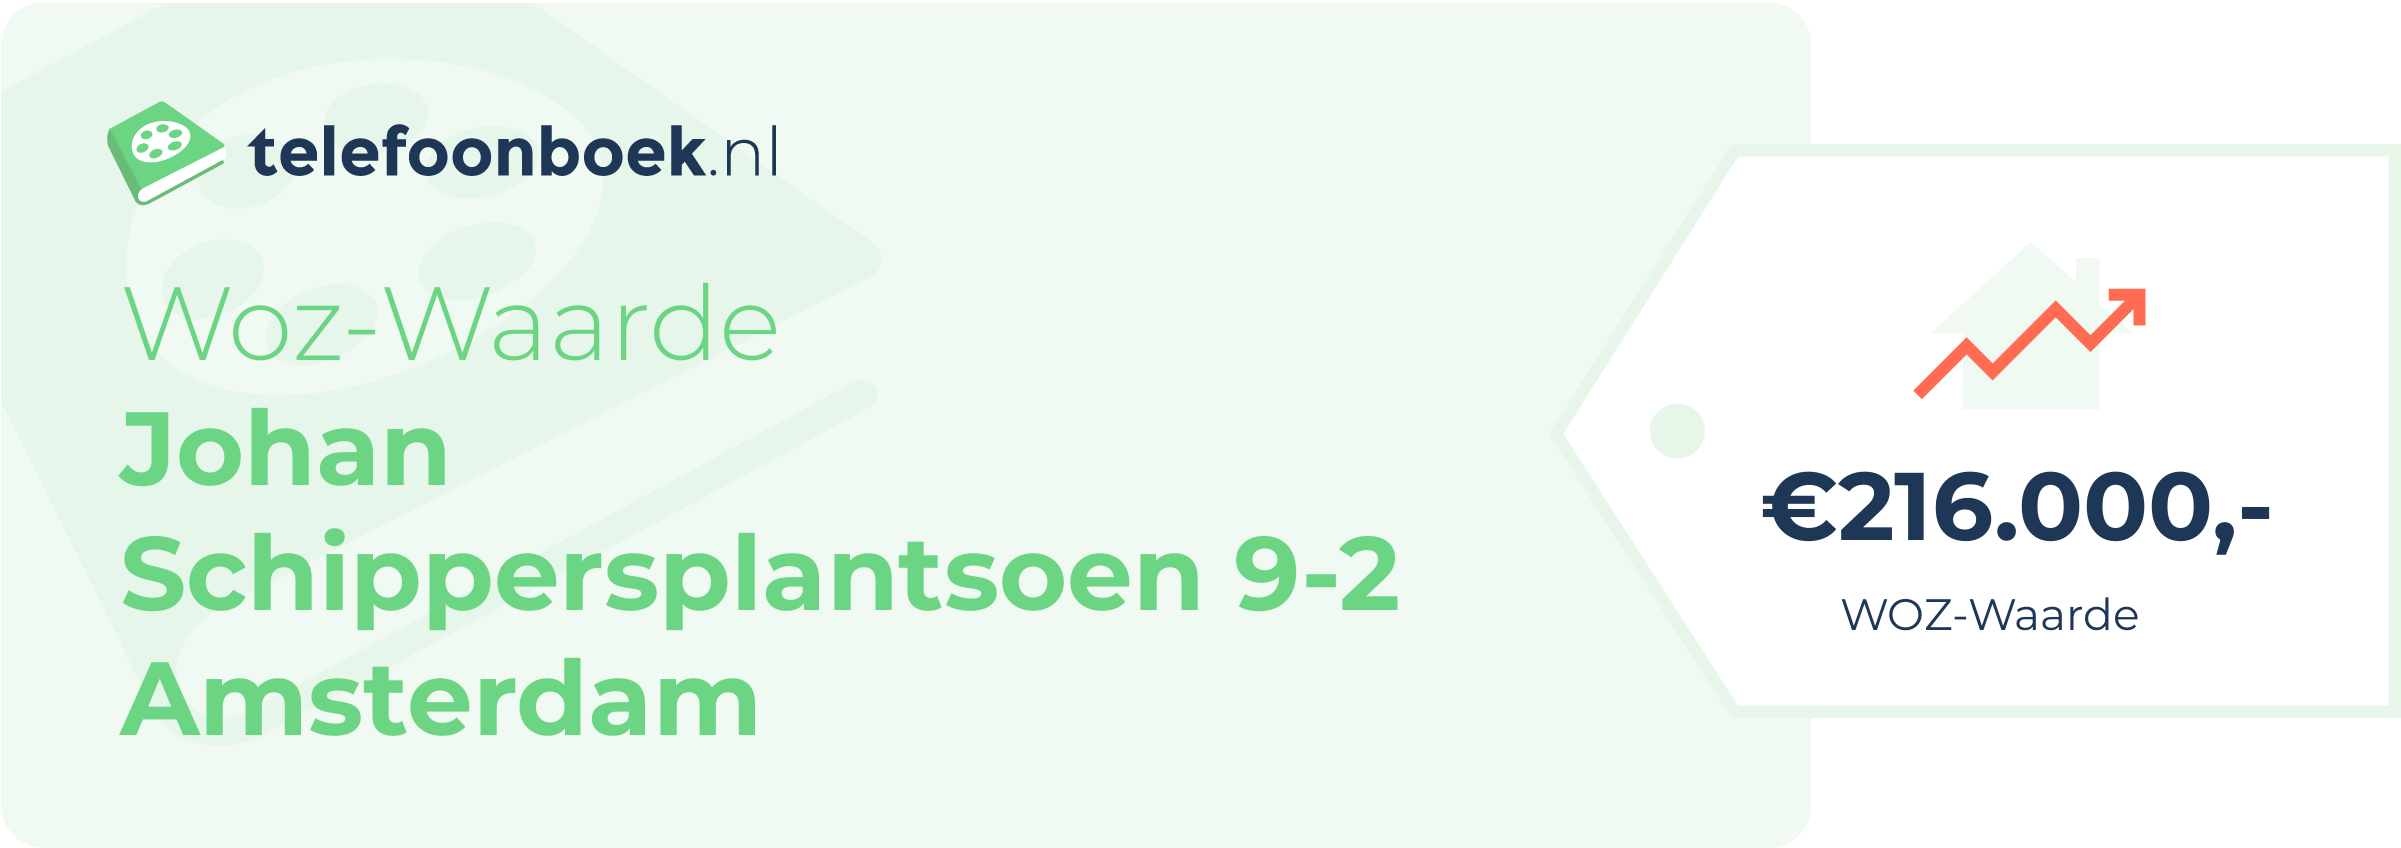 WOZ-waarde Johan Schippersplantsoen 9-2 Amsterdam